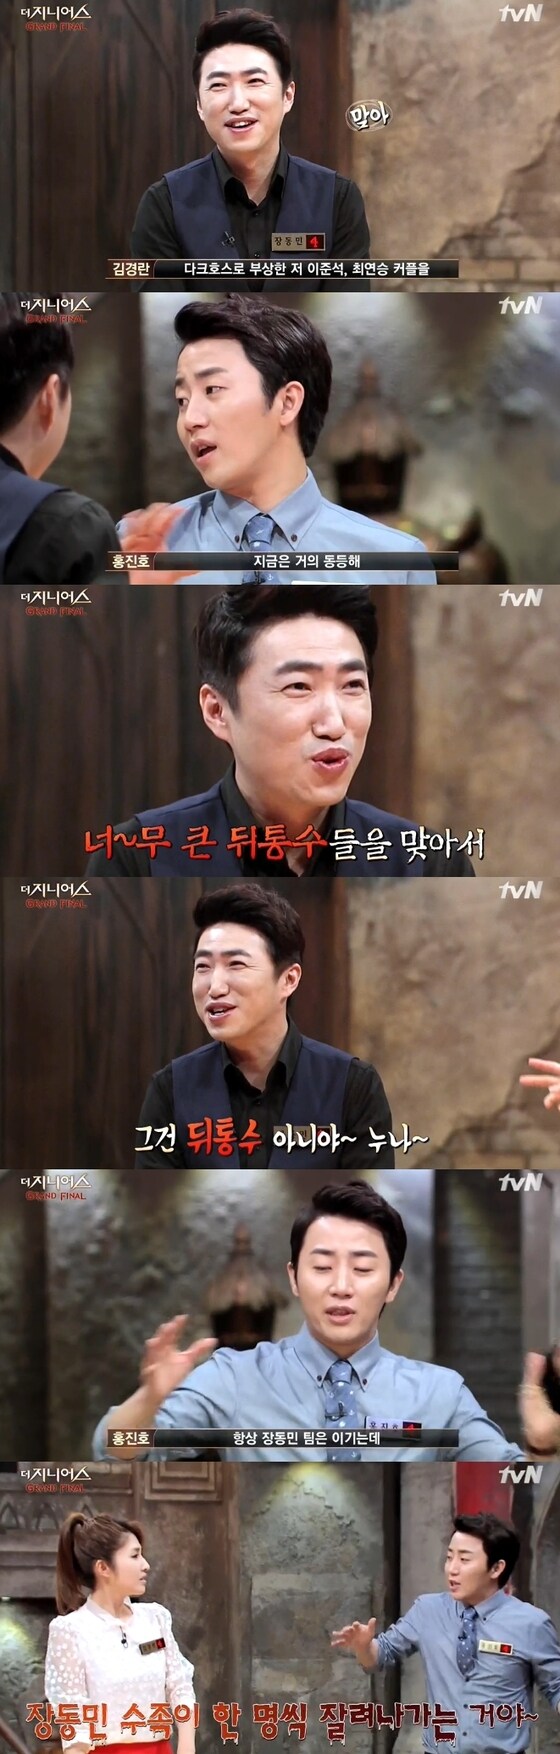 '더 지니어스' 홍진호가 장동민 전술을 언급했다. © News1스포츠/  tvN '더 지니어스:그랜드 파이널' 캡처